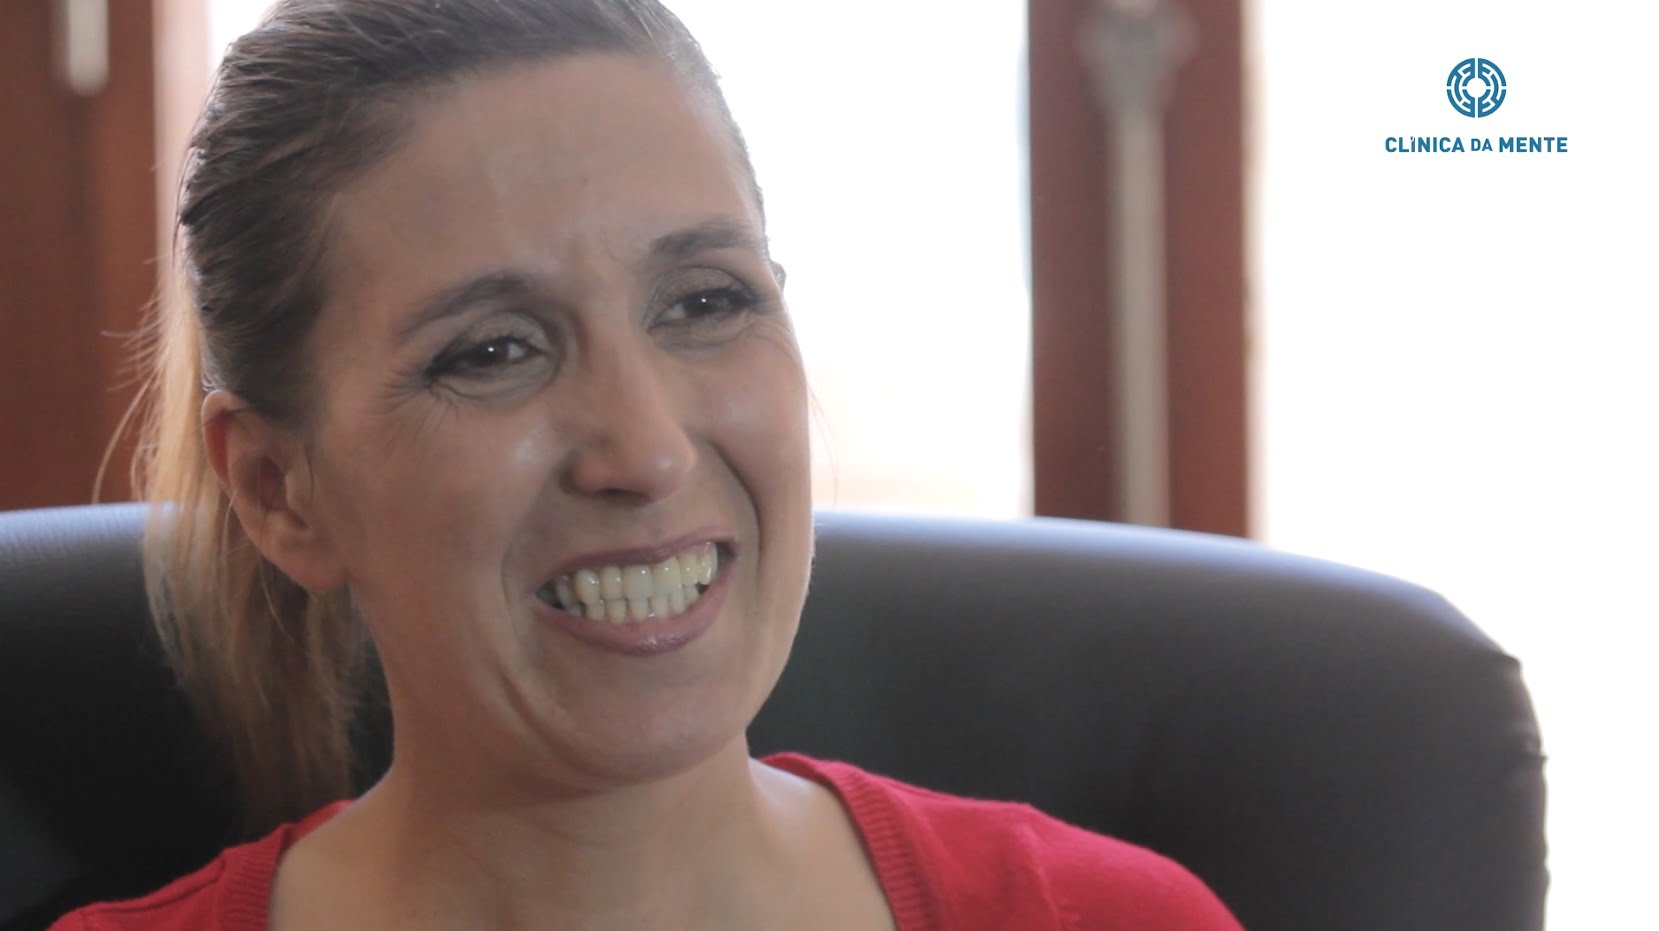 Claudia explica como o tratamento na clínica da mente a ajudou a superar as suas dificuldades